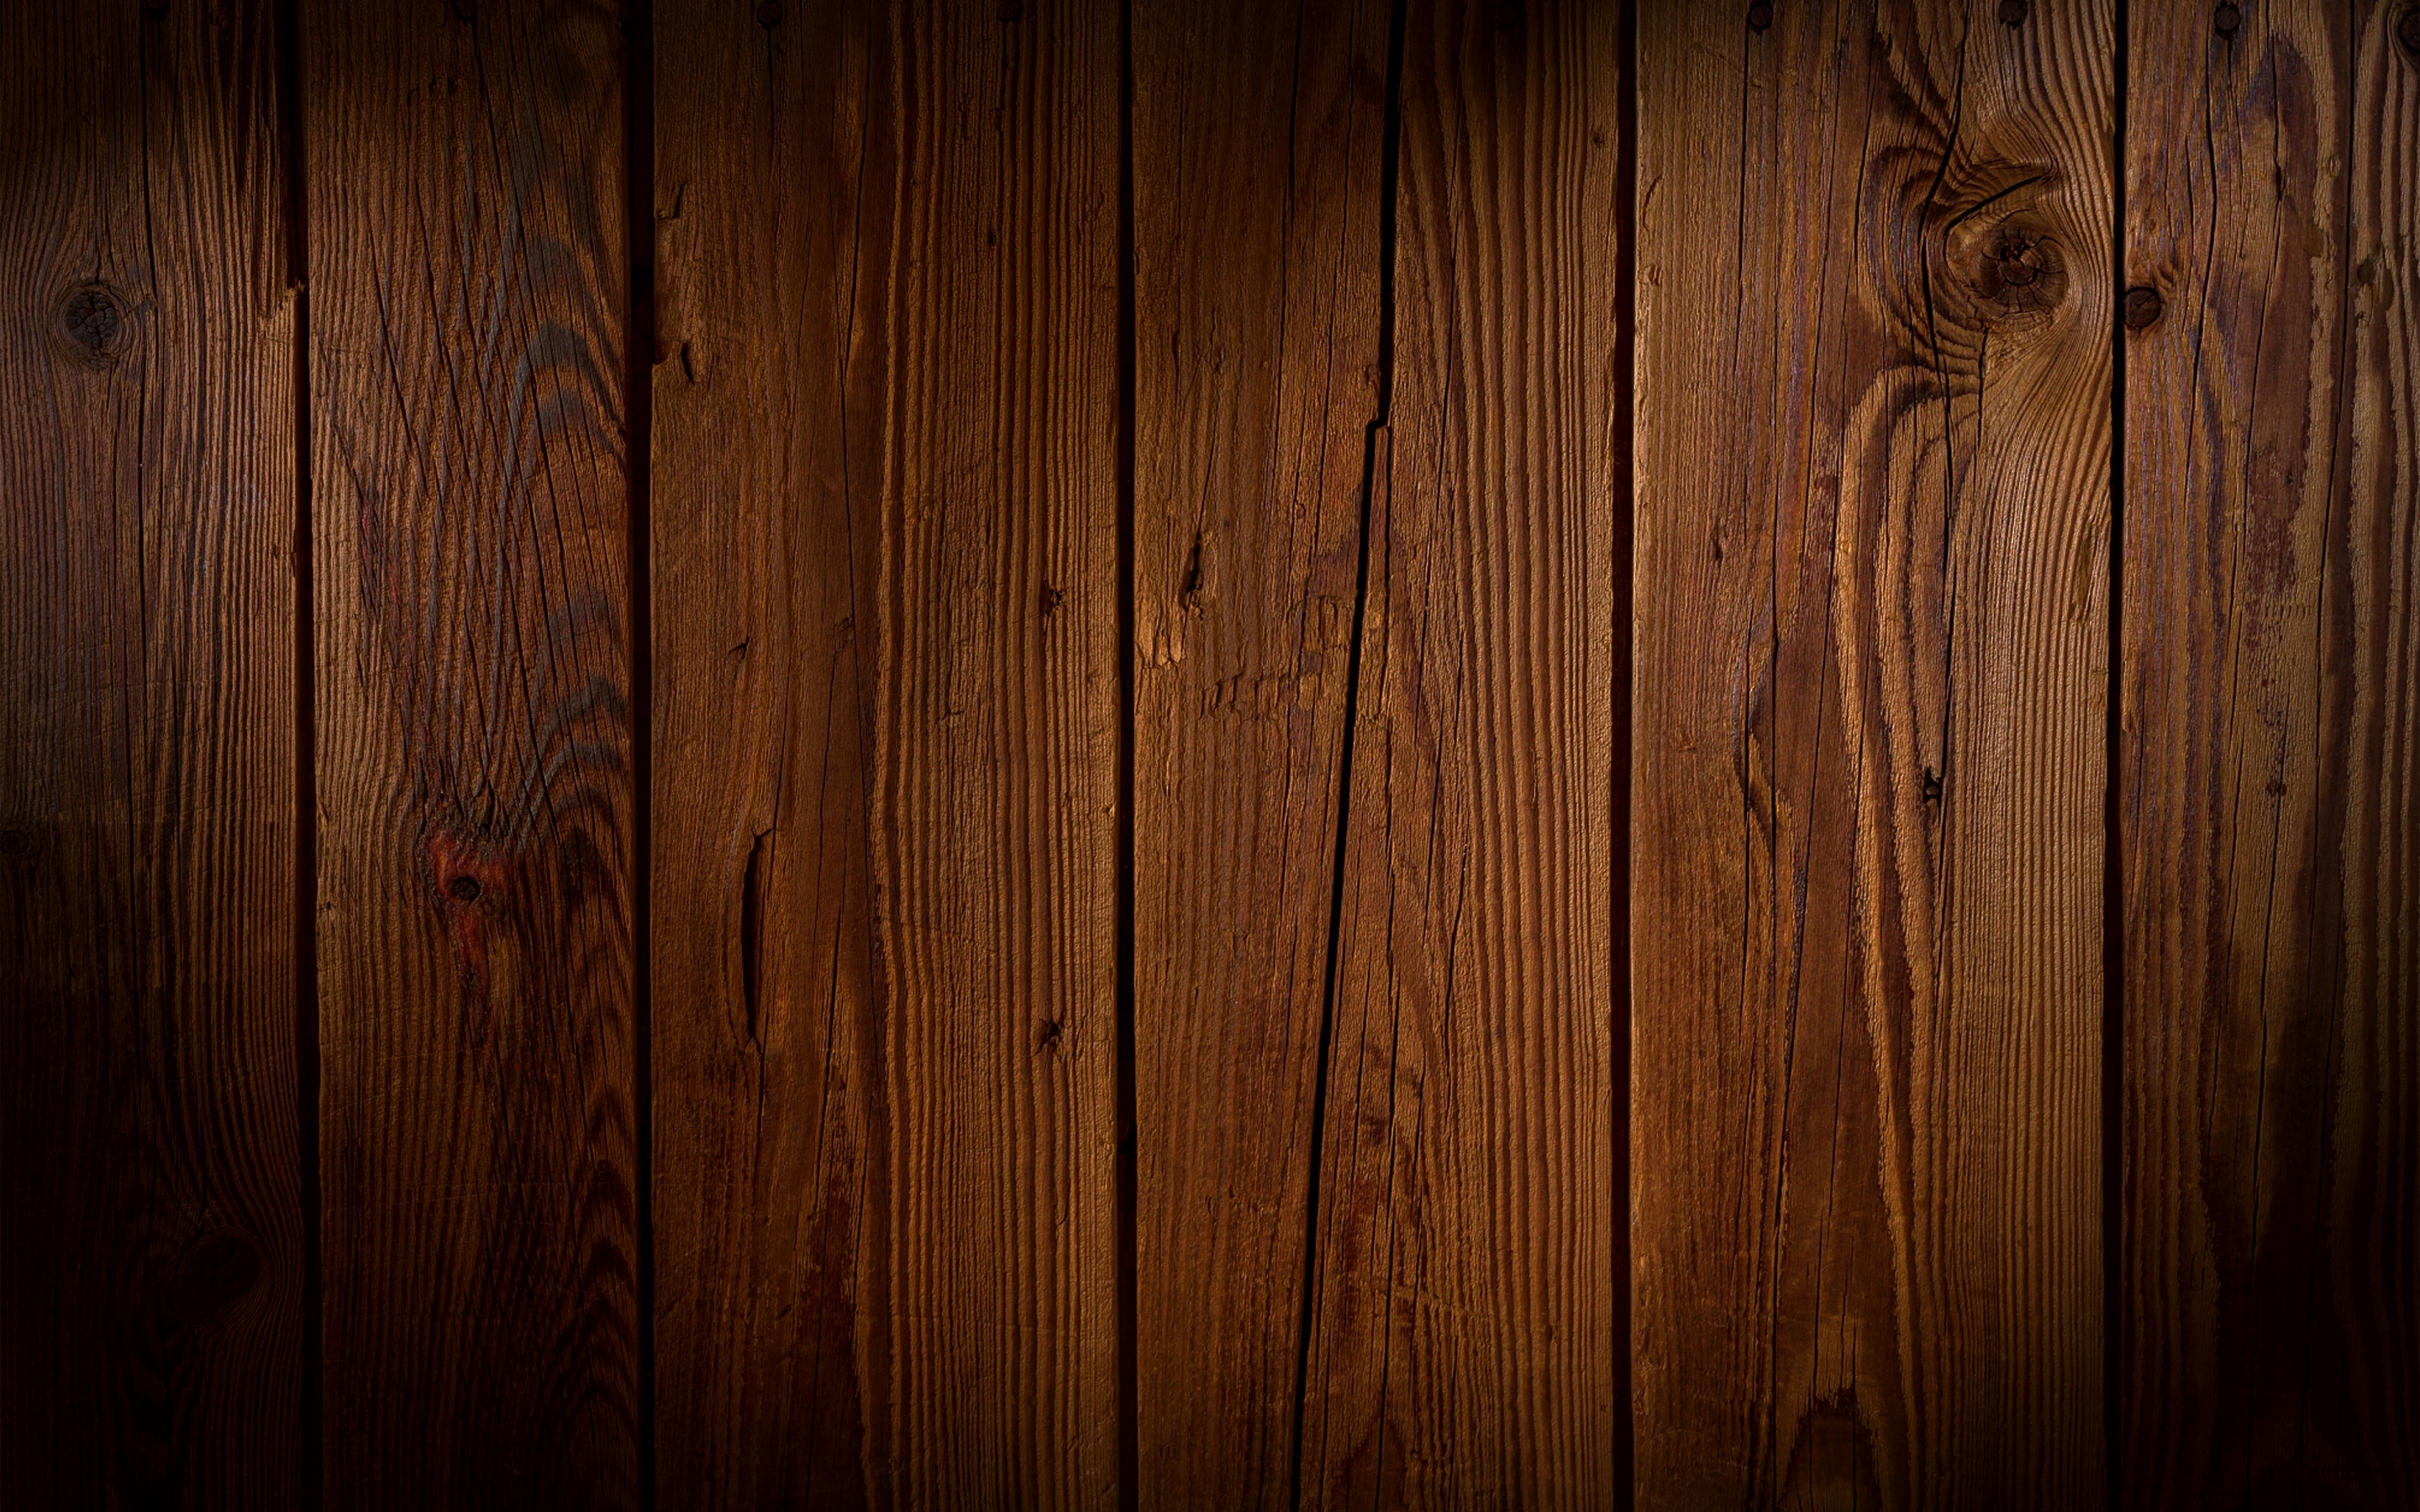 Hình ảnh nền gỗ với sự kết hợp màu sắc ấm áp và tự nhiên sẽ giúp tạo nên một không gian làm việc hoặc nghỉ ngơi thú vị. Với những đốm sáng tạo thành những hình khối trên nền gỗ, sẽ giúp cho không gian trở nên sống động và đầy tính thẩm mỹ.